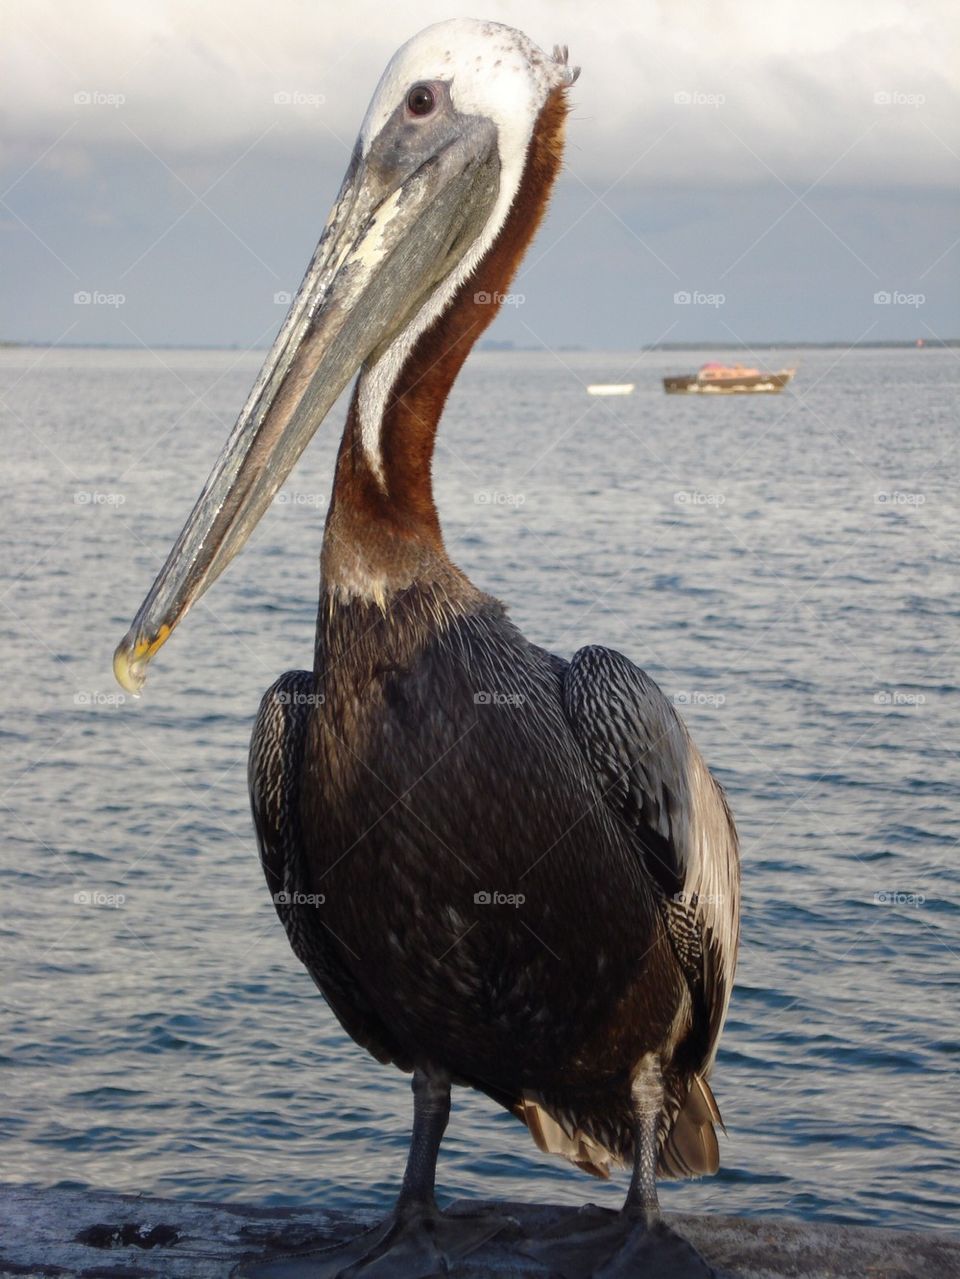 Floridian Pelican